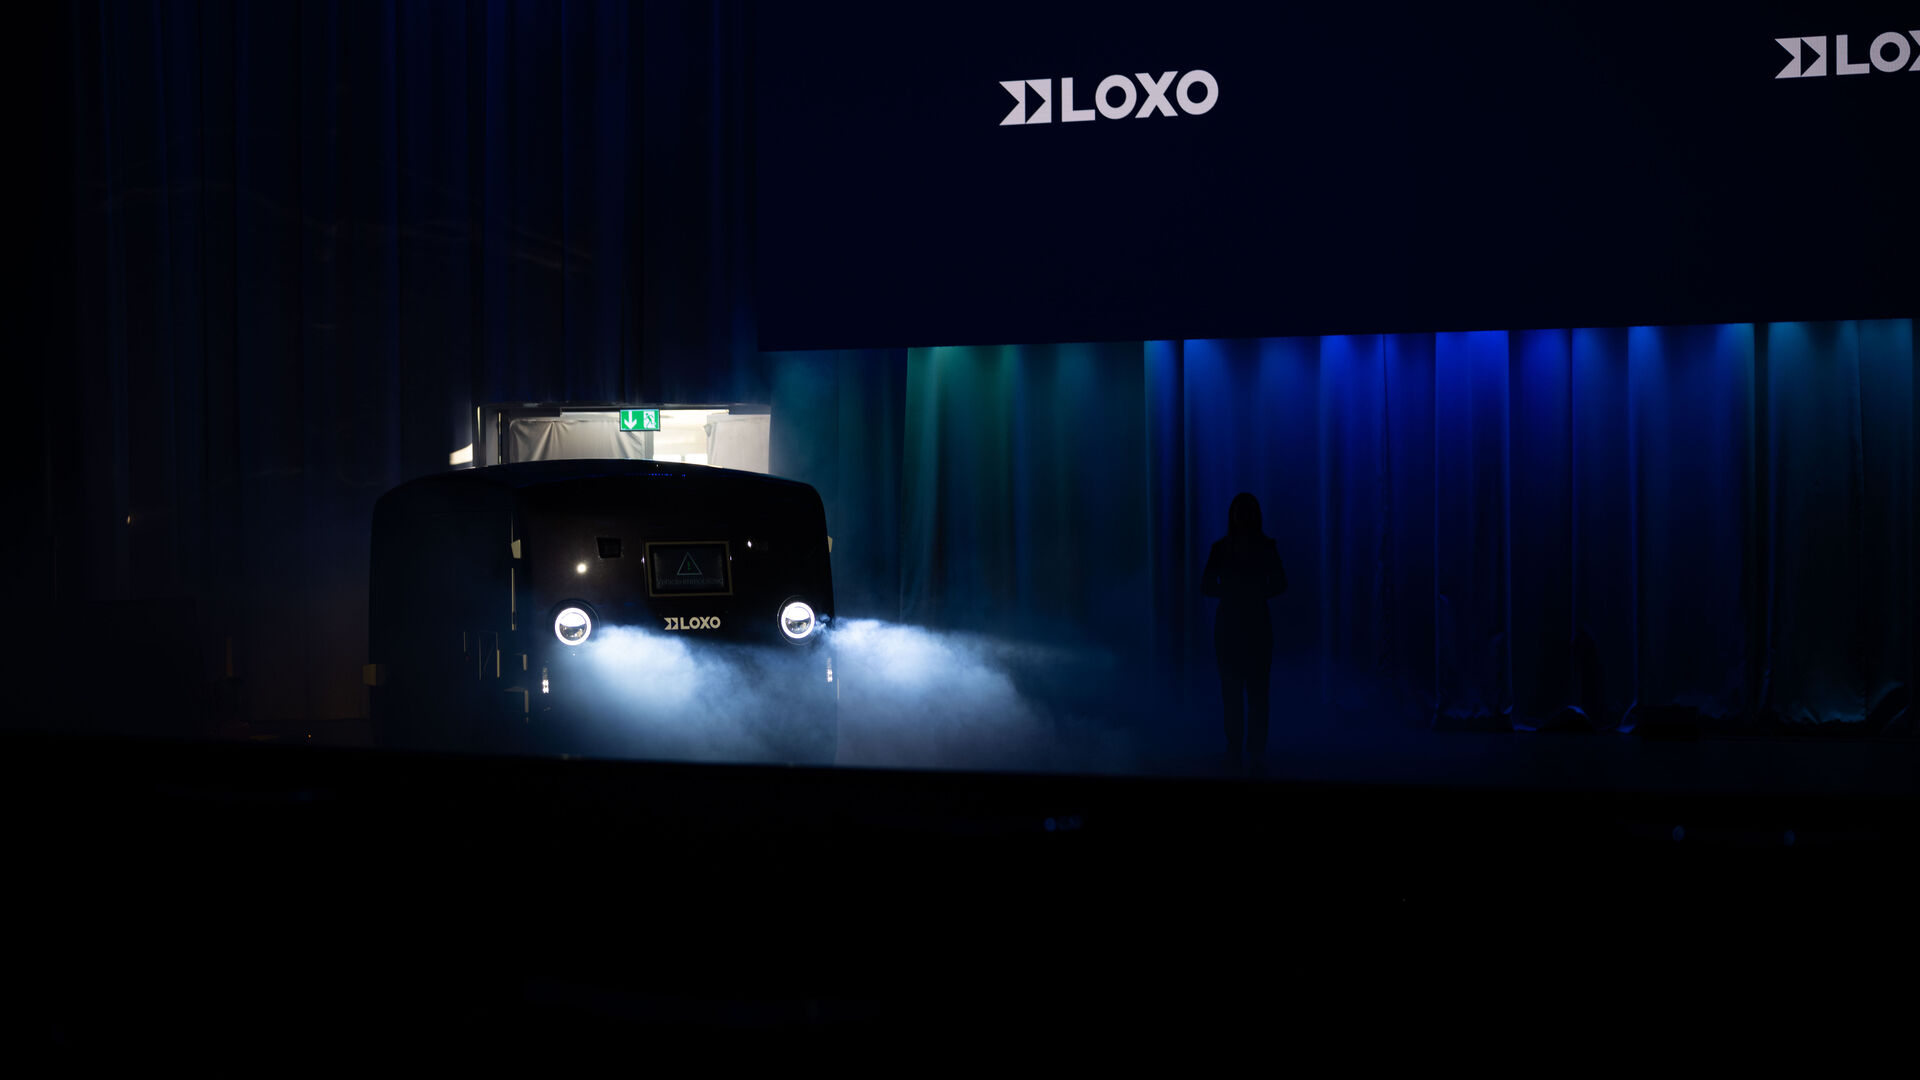 LOXO: अल्फा एक सेल्फ-ड्राइविंग वैन है जो पूरी तरह से स्विट्जरलैंड में बनाई गई है और इसे 6 दिसंबर 2022 को बर्न के कुर्साल में स्टार्ट-अप LOXO द्वारा एक प्रेस कॉन्फ्रेंस के दौरान प्रस्तुत किया गया था।